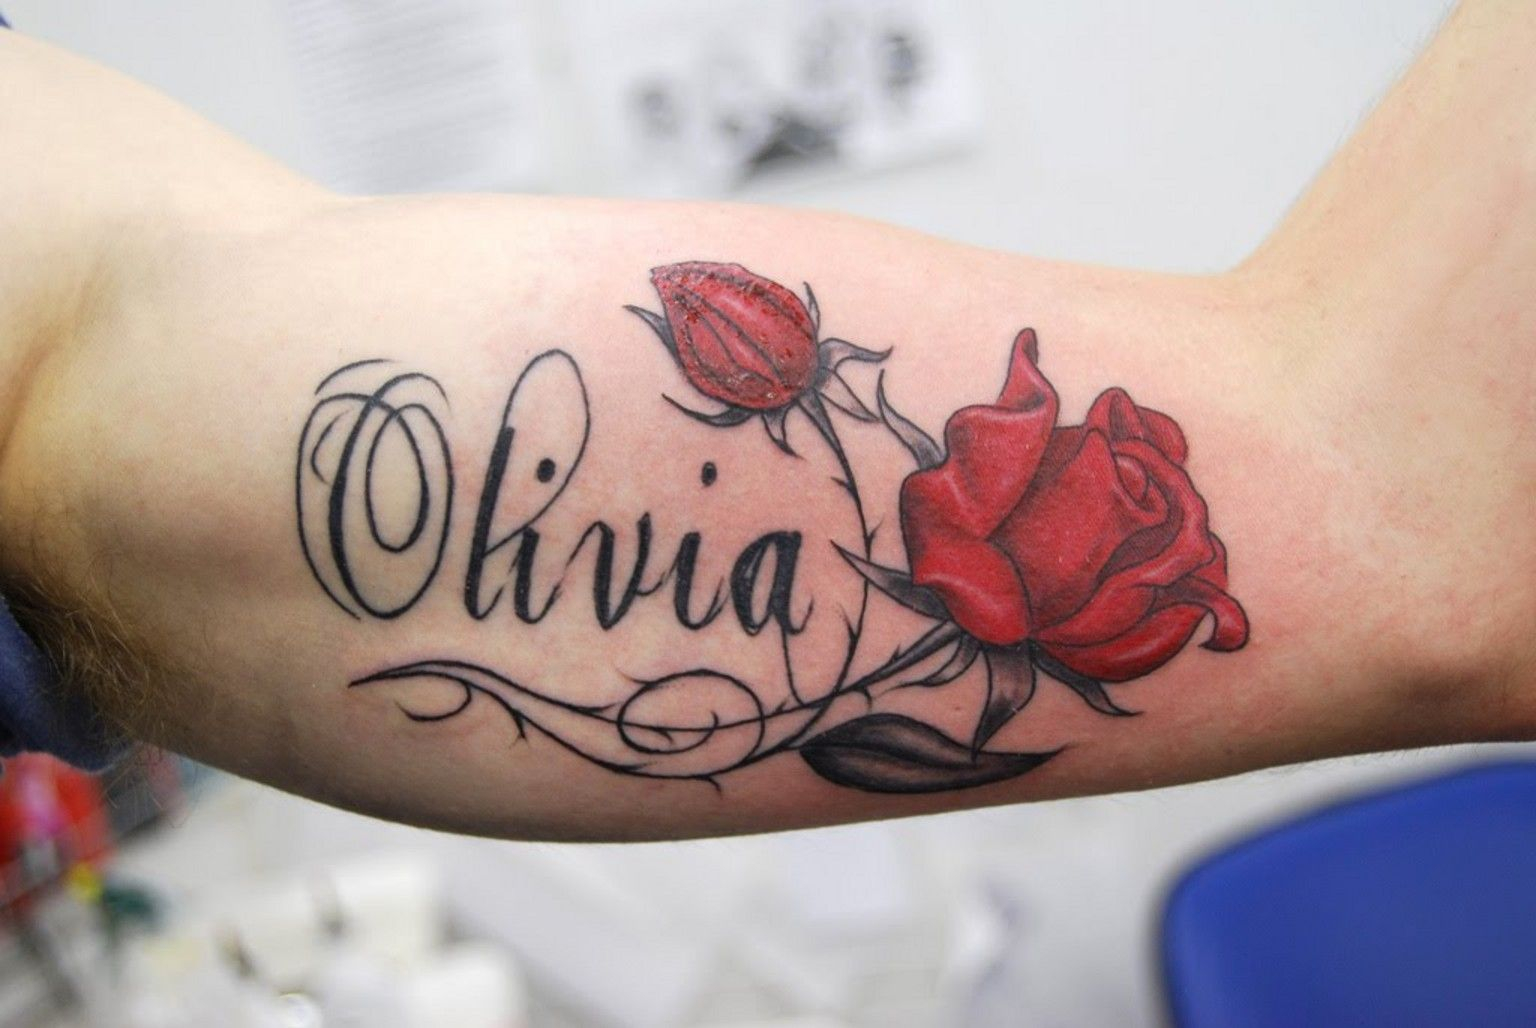 Name Tattoos Name Tattoos On Arm Name Tattoos On Wrist Name Tattoo in sizing 1536 X 1028